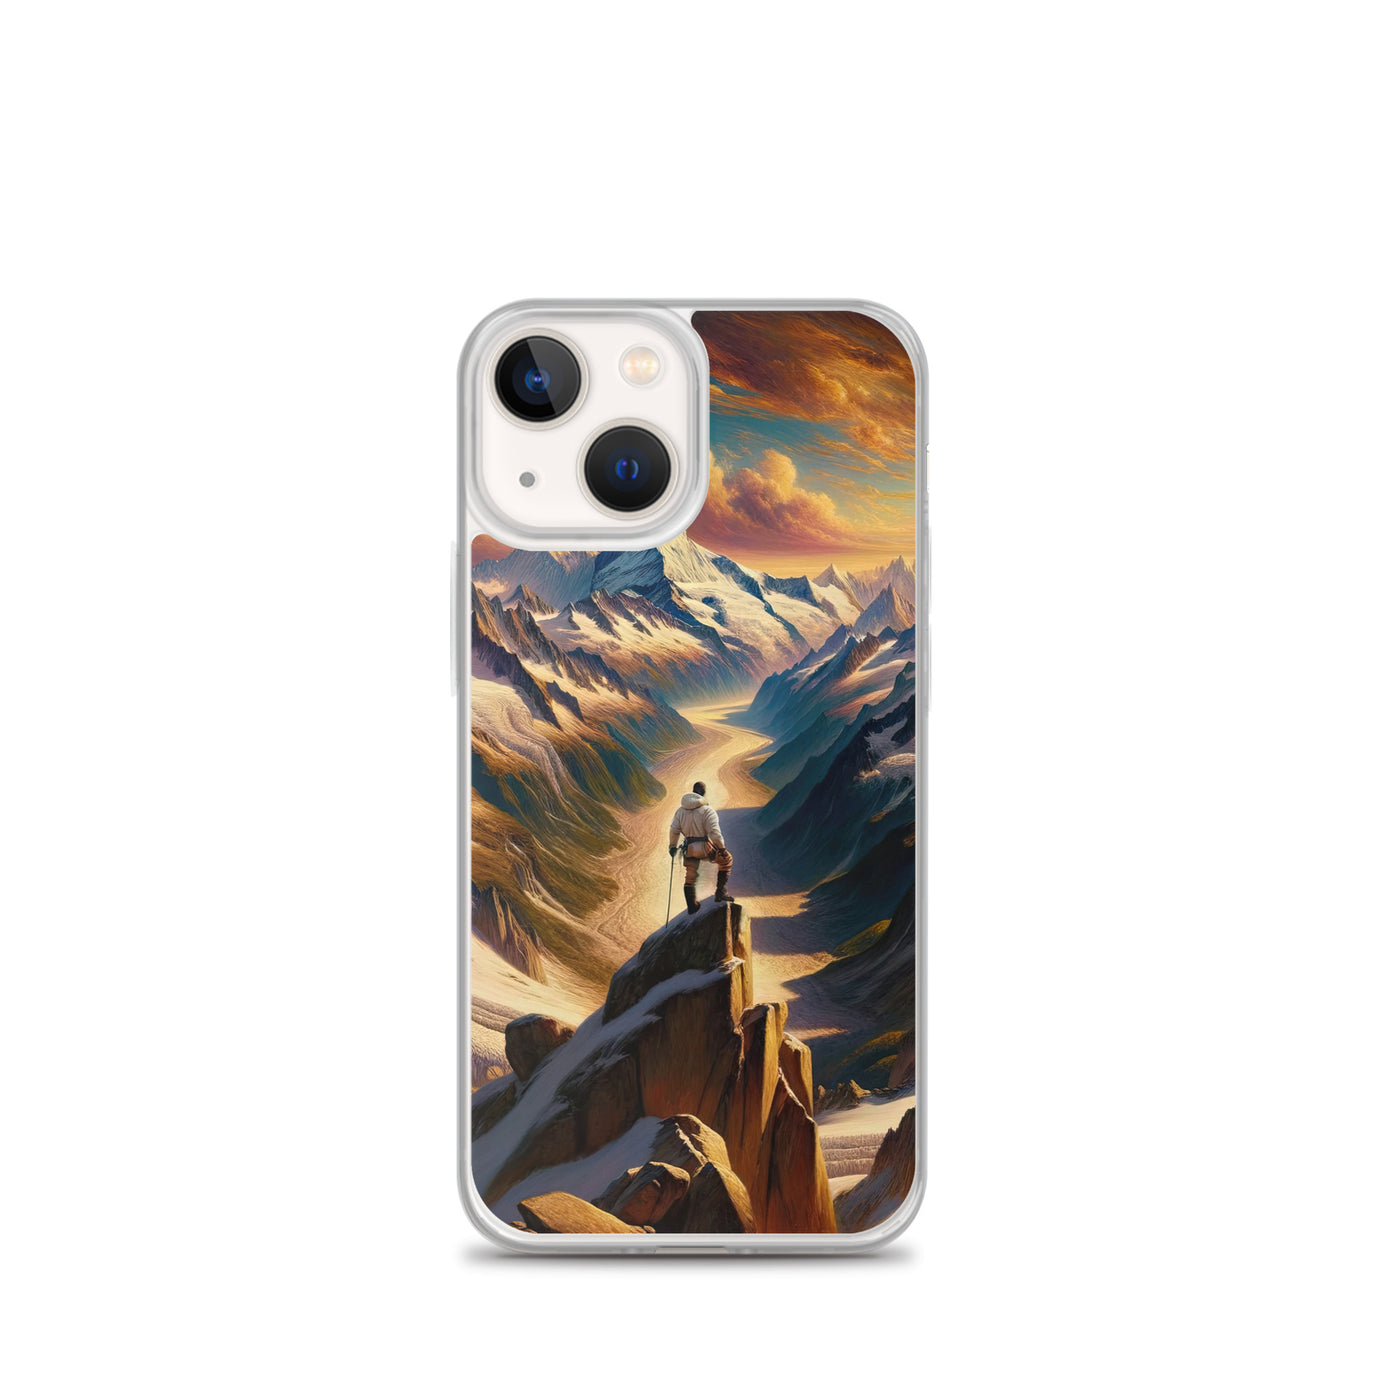 Ölgemälde eines Wanderers auf einem Hügel mit Panoramablick auf schneebedeckte Alpen und goldenen Himmel - iPhone Schutzhülle (durchsichtig) wandern xxx yyy zzz iPhone 13 mini